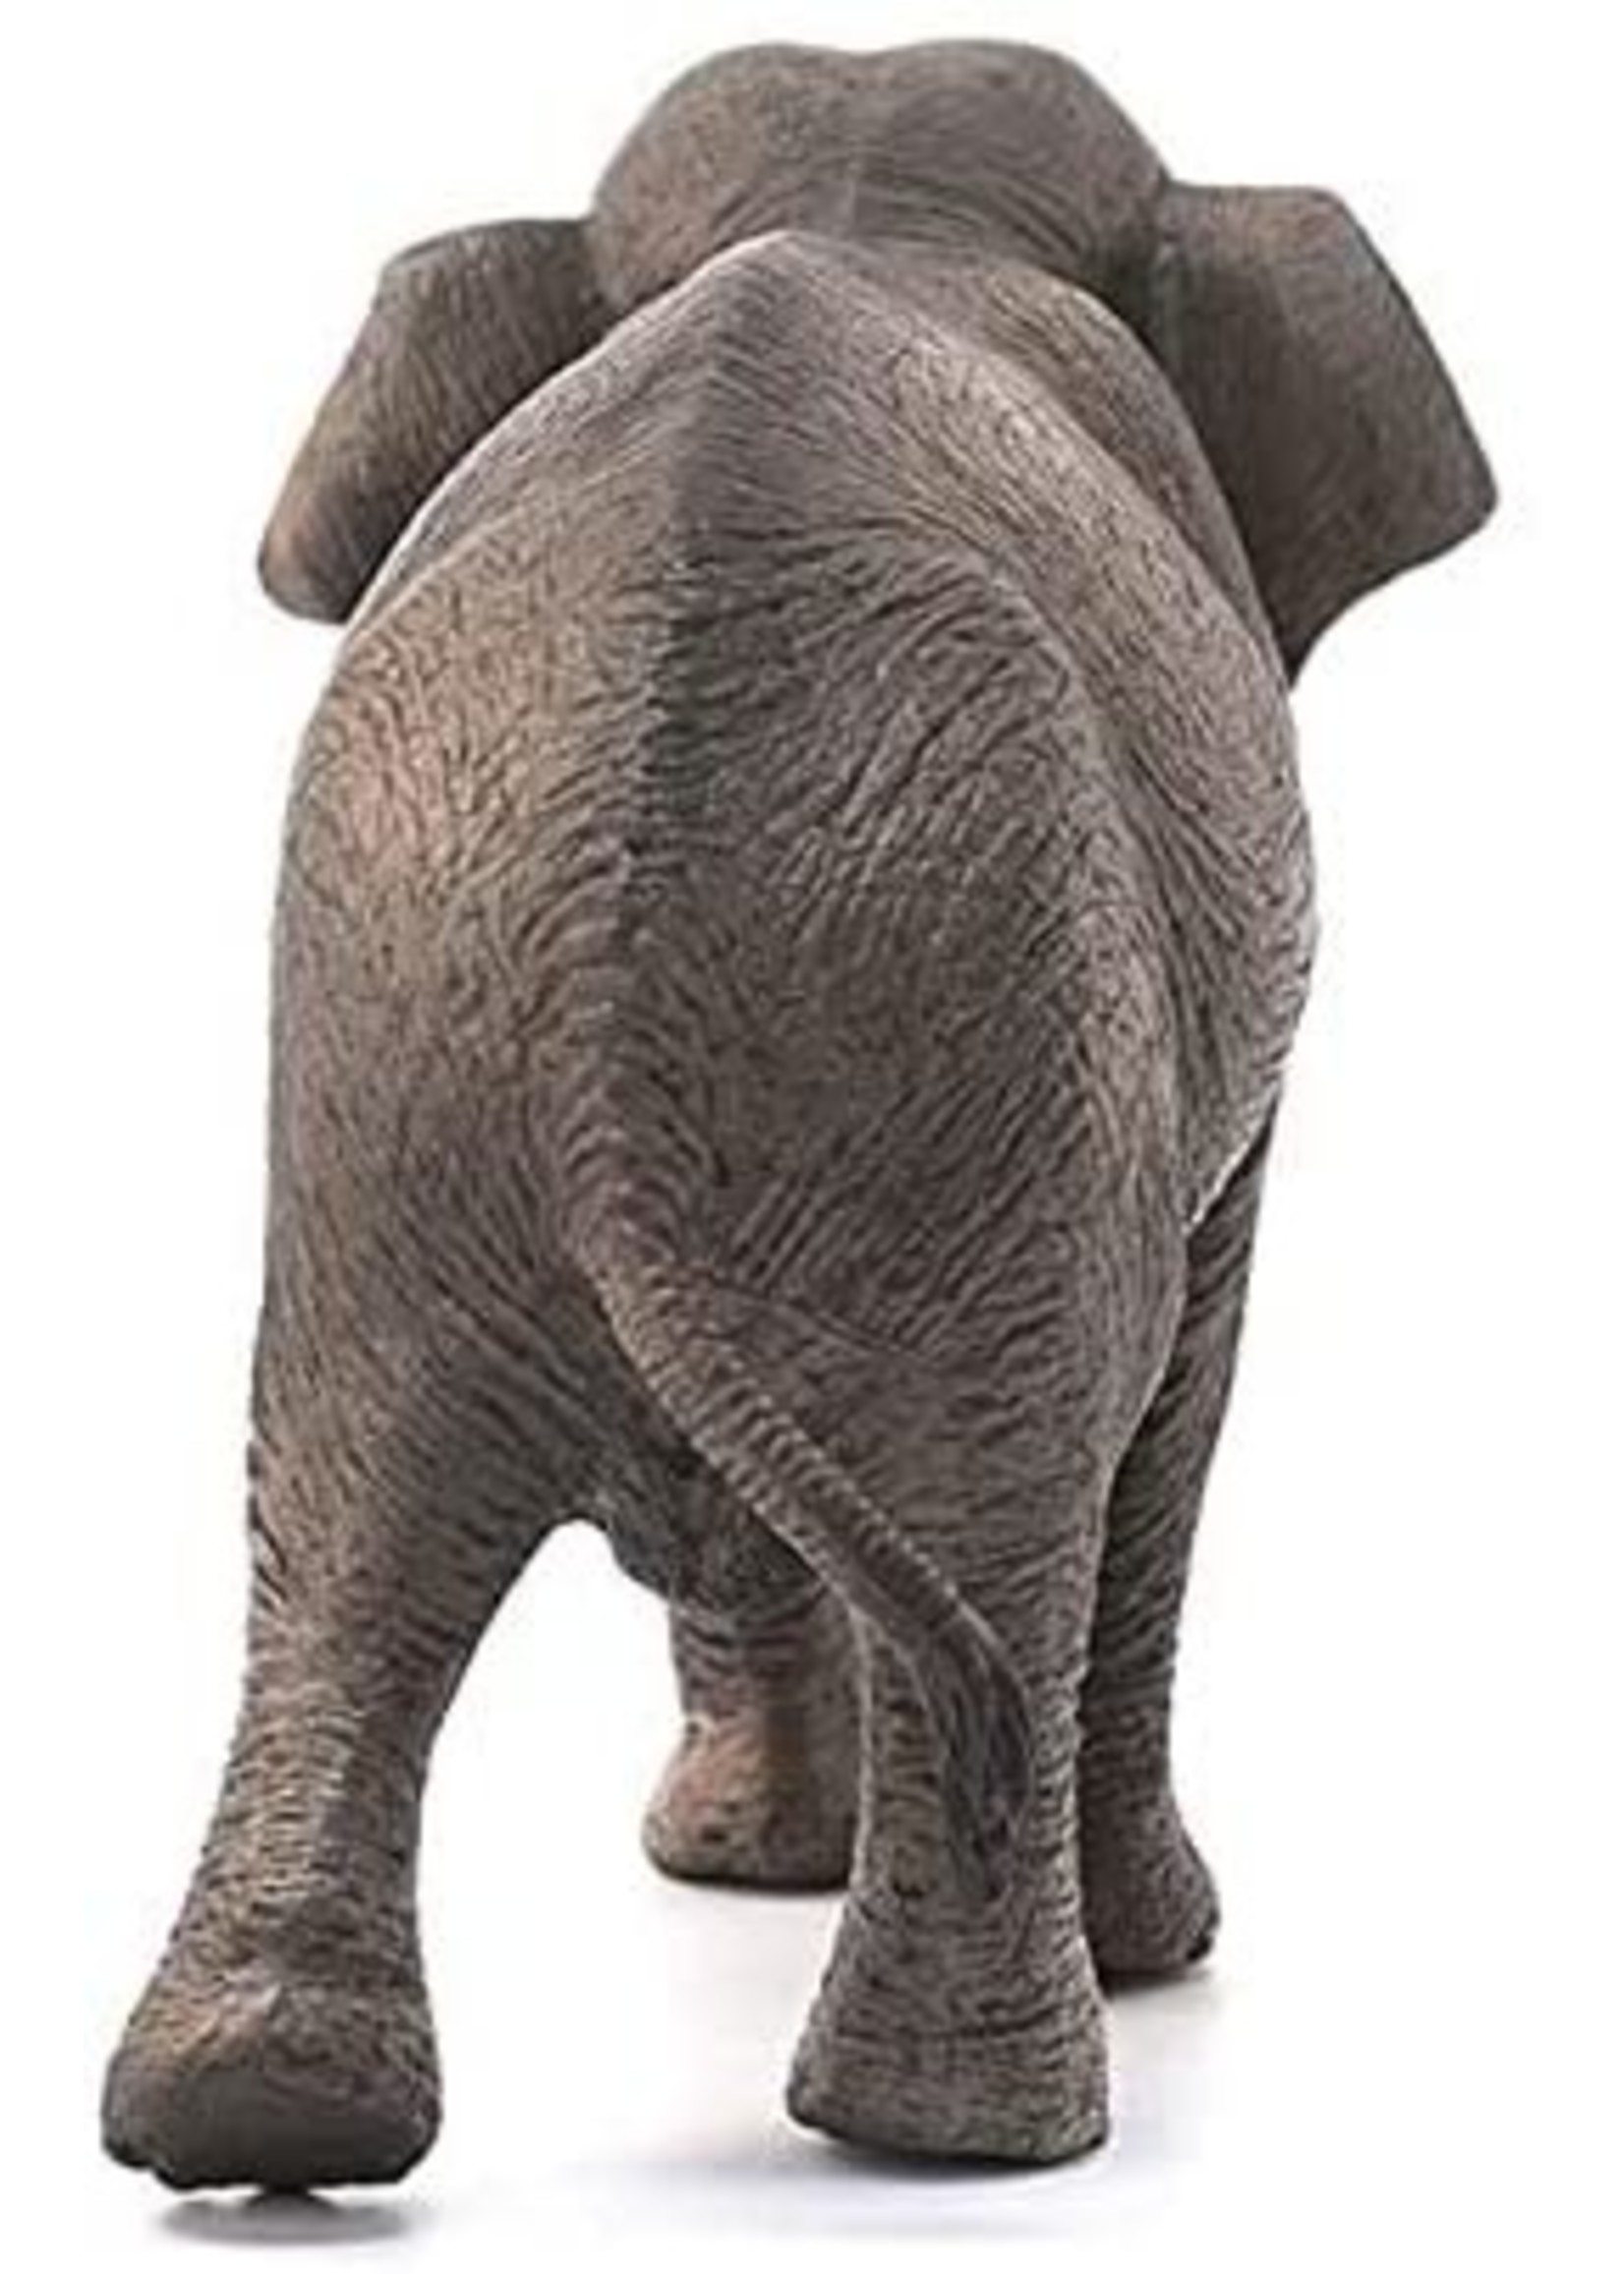 Schleich 14753 - Asian Elephant Female